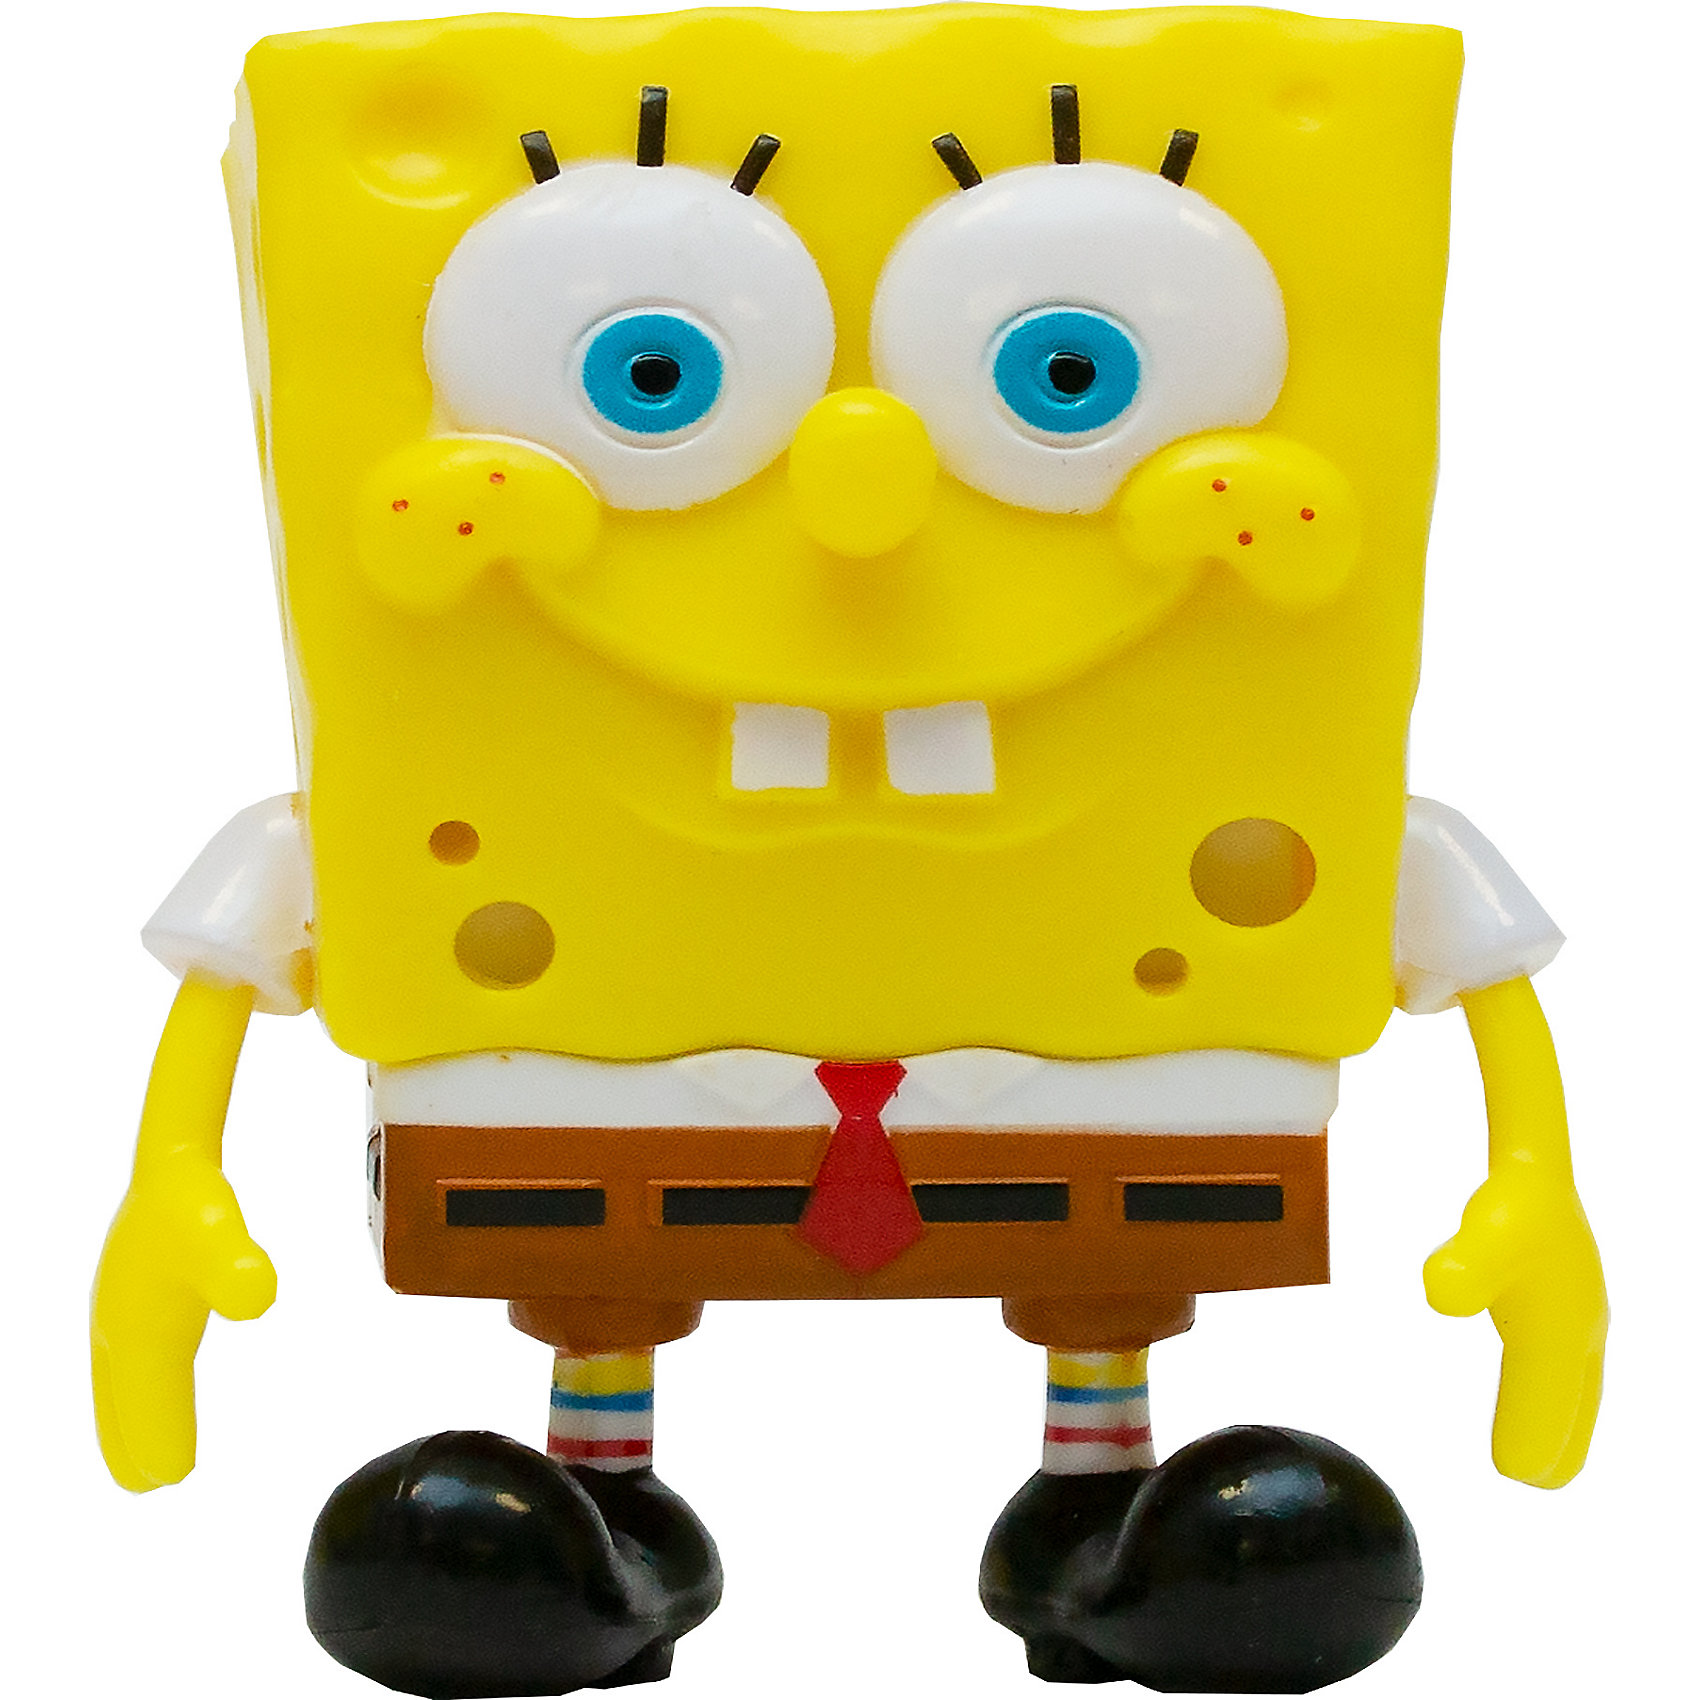 Купить игрушку боба. Spongebob eu690200 игровой набор со слизью. Игрушка антистресс Spongebob, eu690300. Игрушки Никелодеон губка Боб. Spongebob Squarepants / игрушка антистресс.